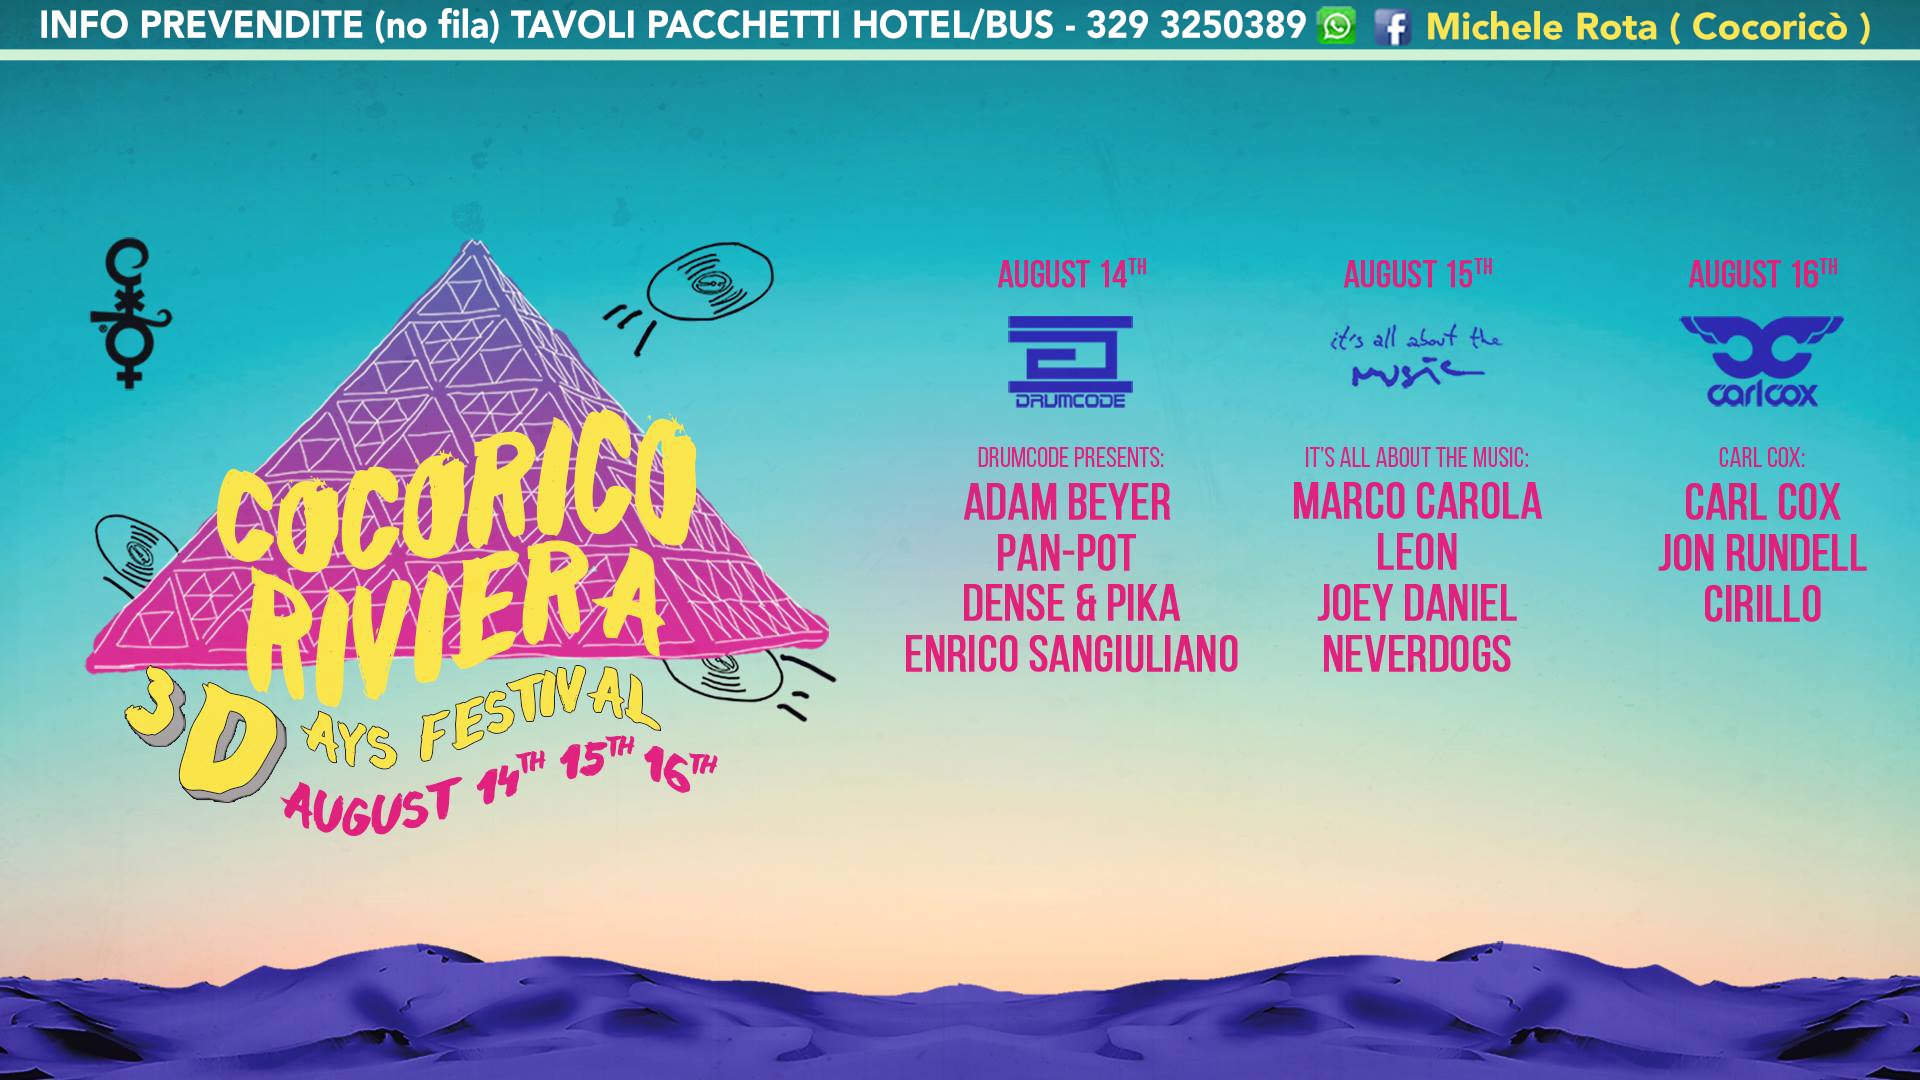 Cocorico 3days Festival 14 15 16 Agosto 2017 ADAM BEYER MARCO CAROLA CARL COX Ticket Pacchetti Hotel